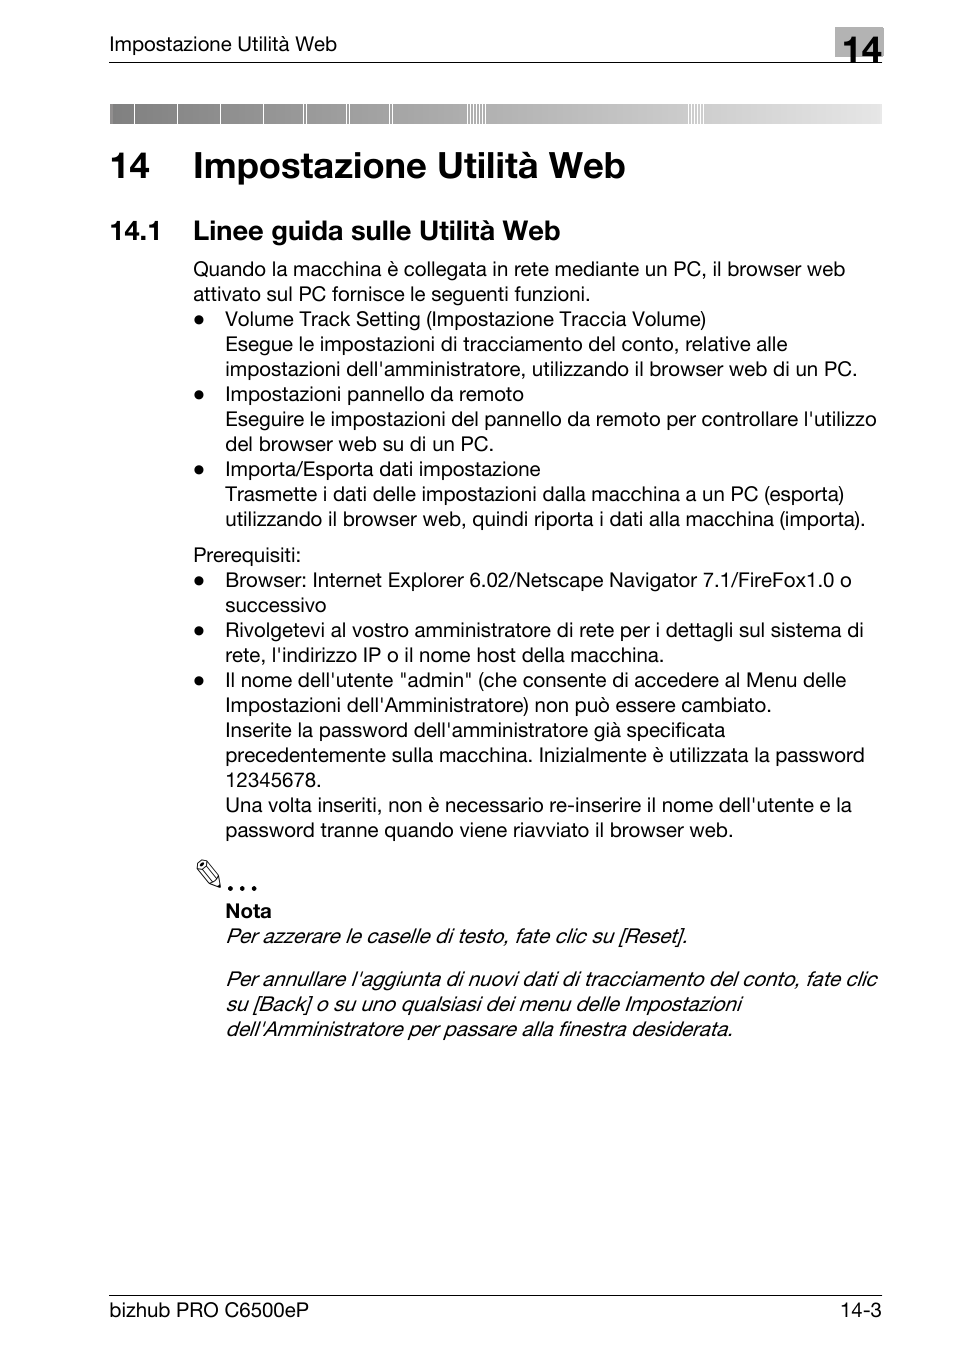 14 impostazione utilità web, 1 linee guida sulle utilità web, Linee guida sulle utilità web -3 | Konica Minolta bizhub PRO C6500P Manuale d'uso | Pagina 541 / 650